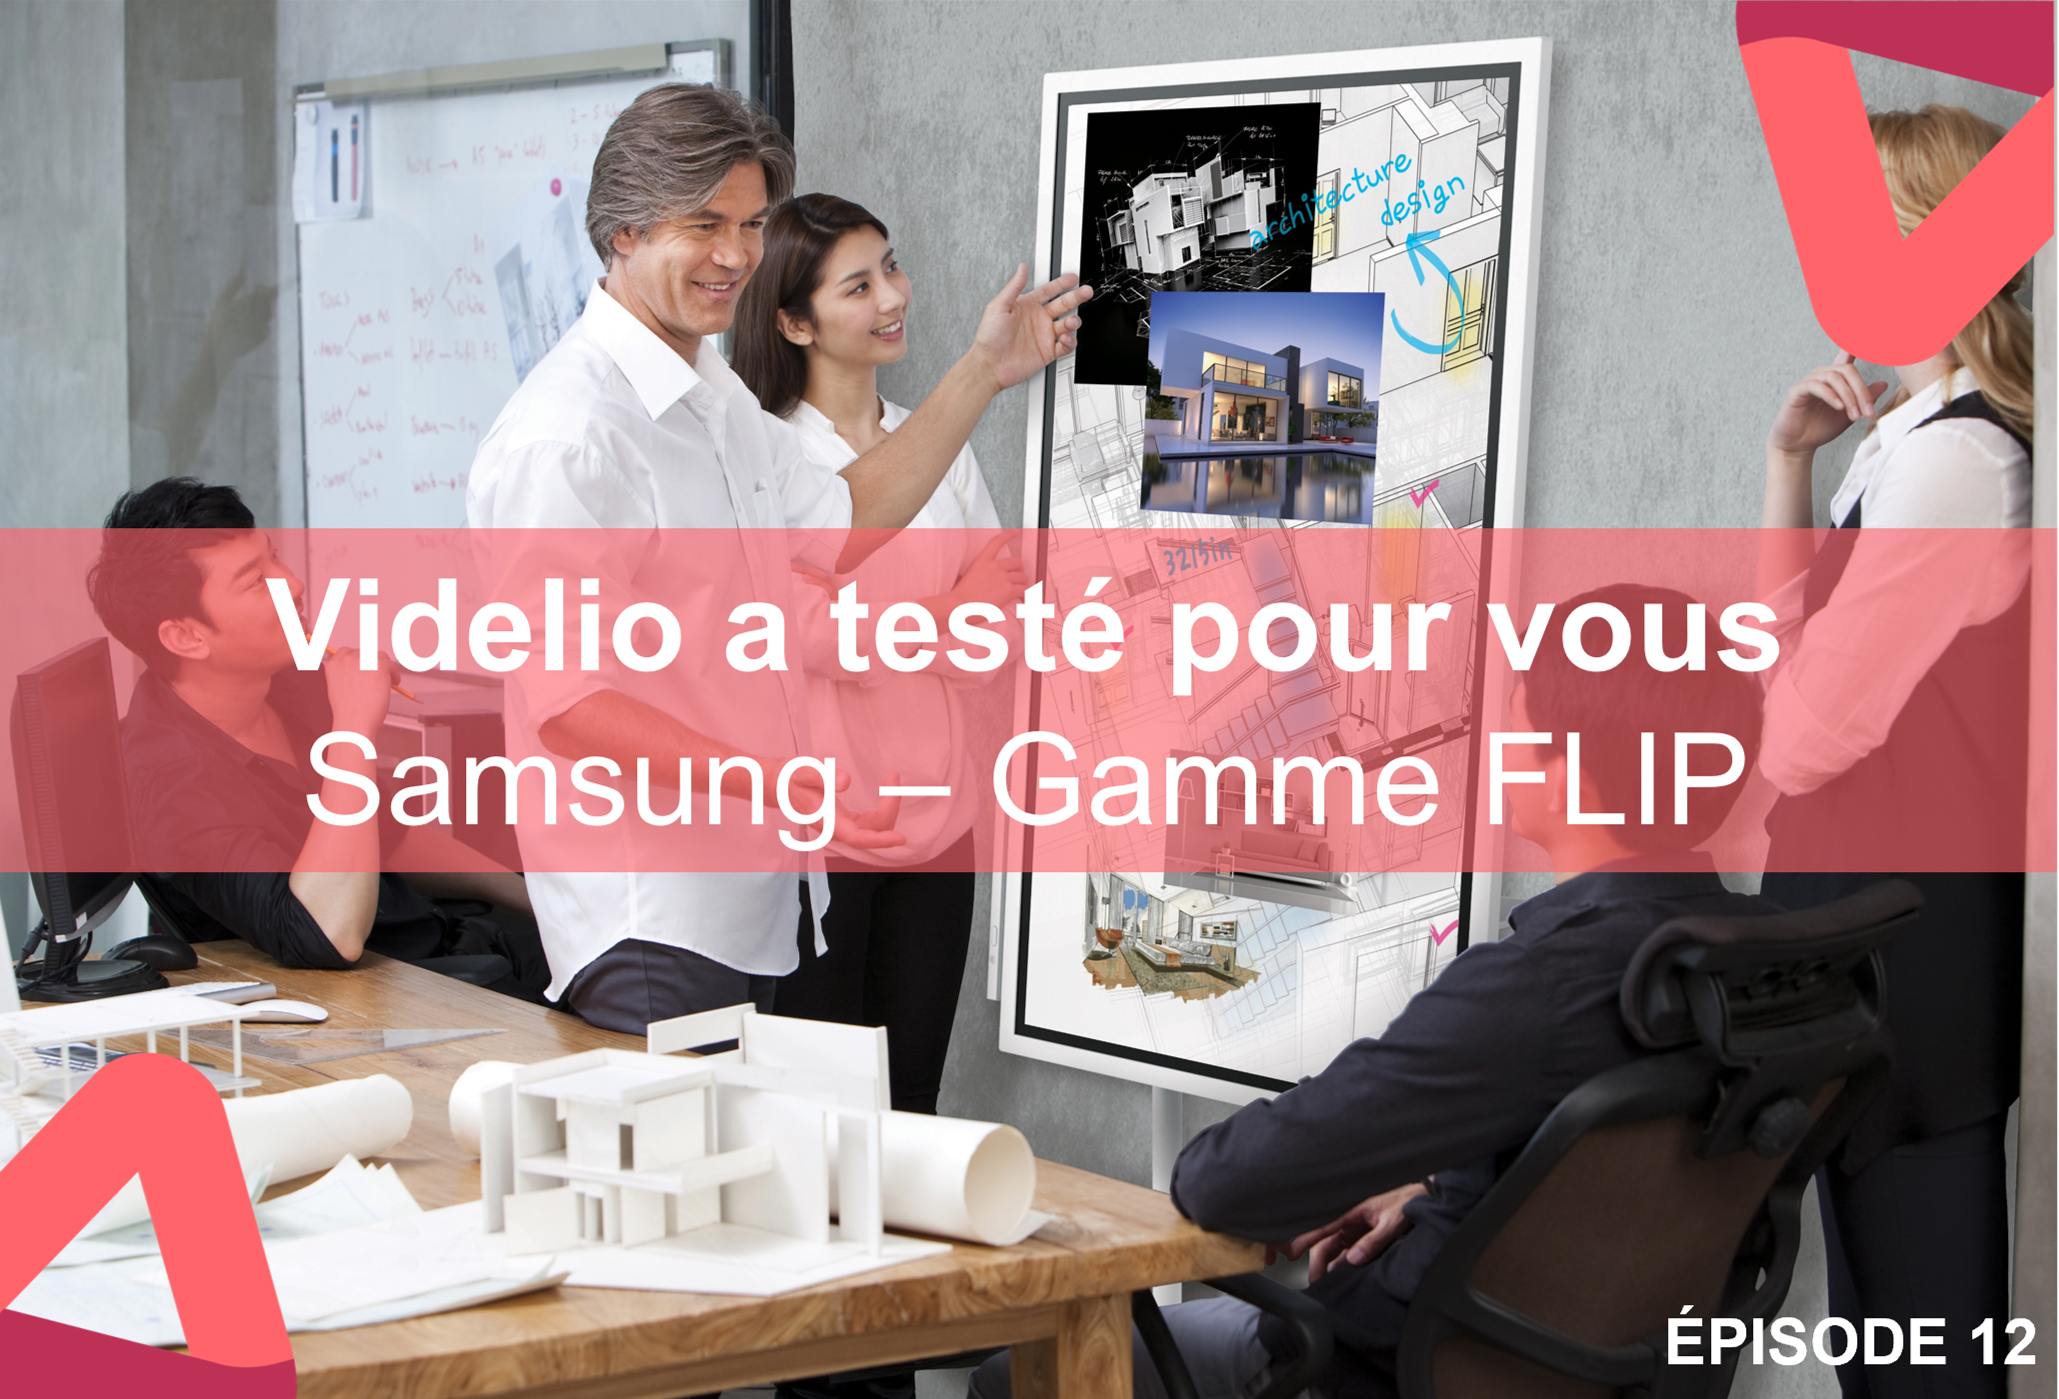 Videlio a testé pour vous Gamme Flip Samsung